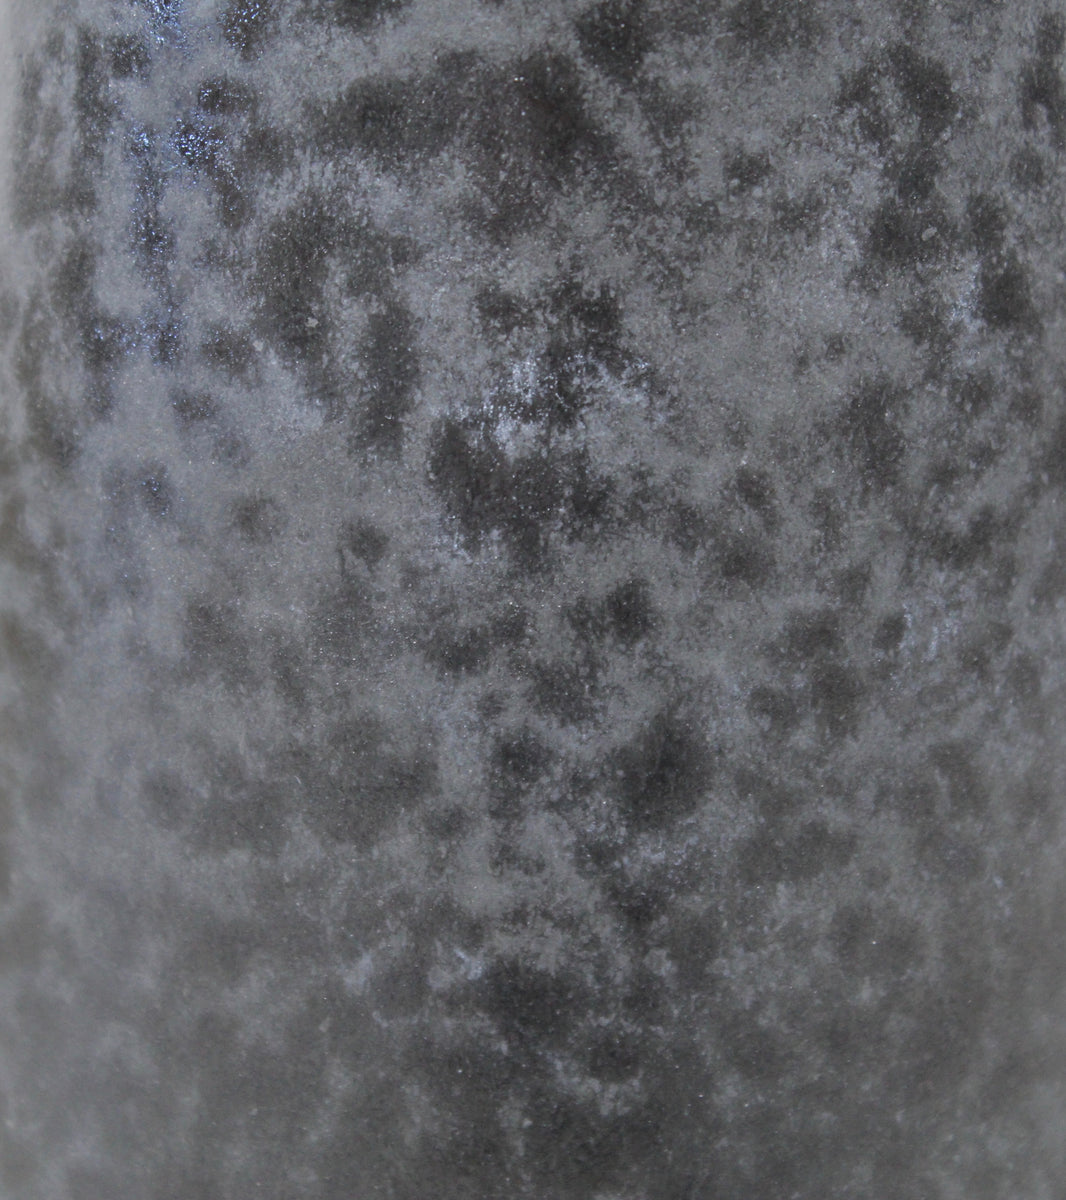 Tapering Cone Vase <br> Black Glaze